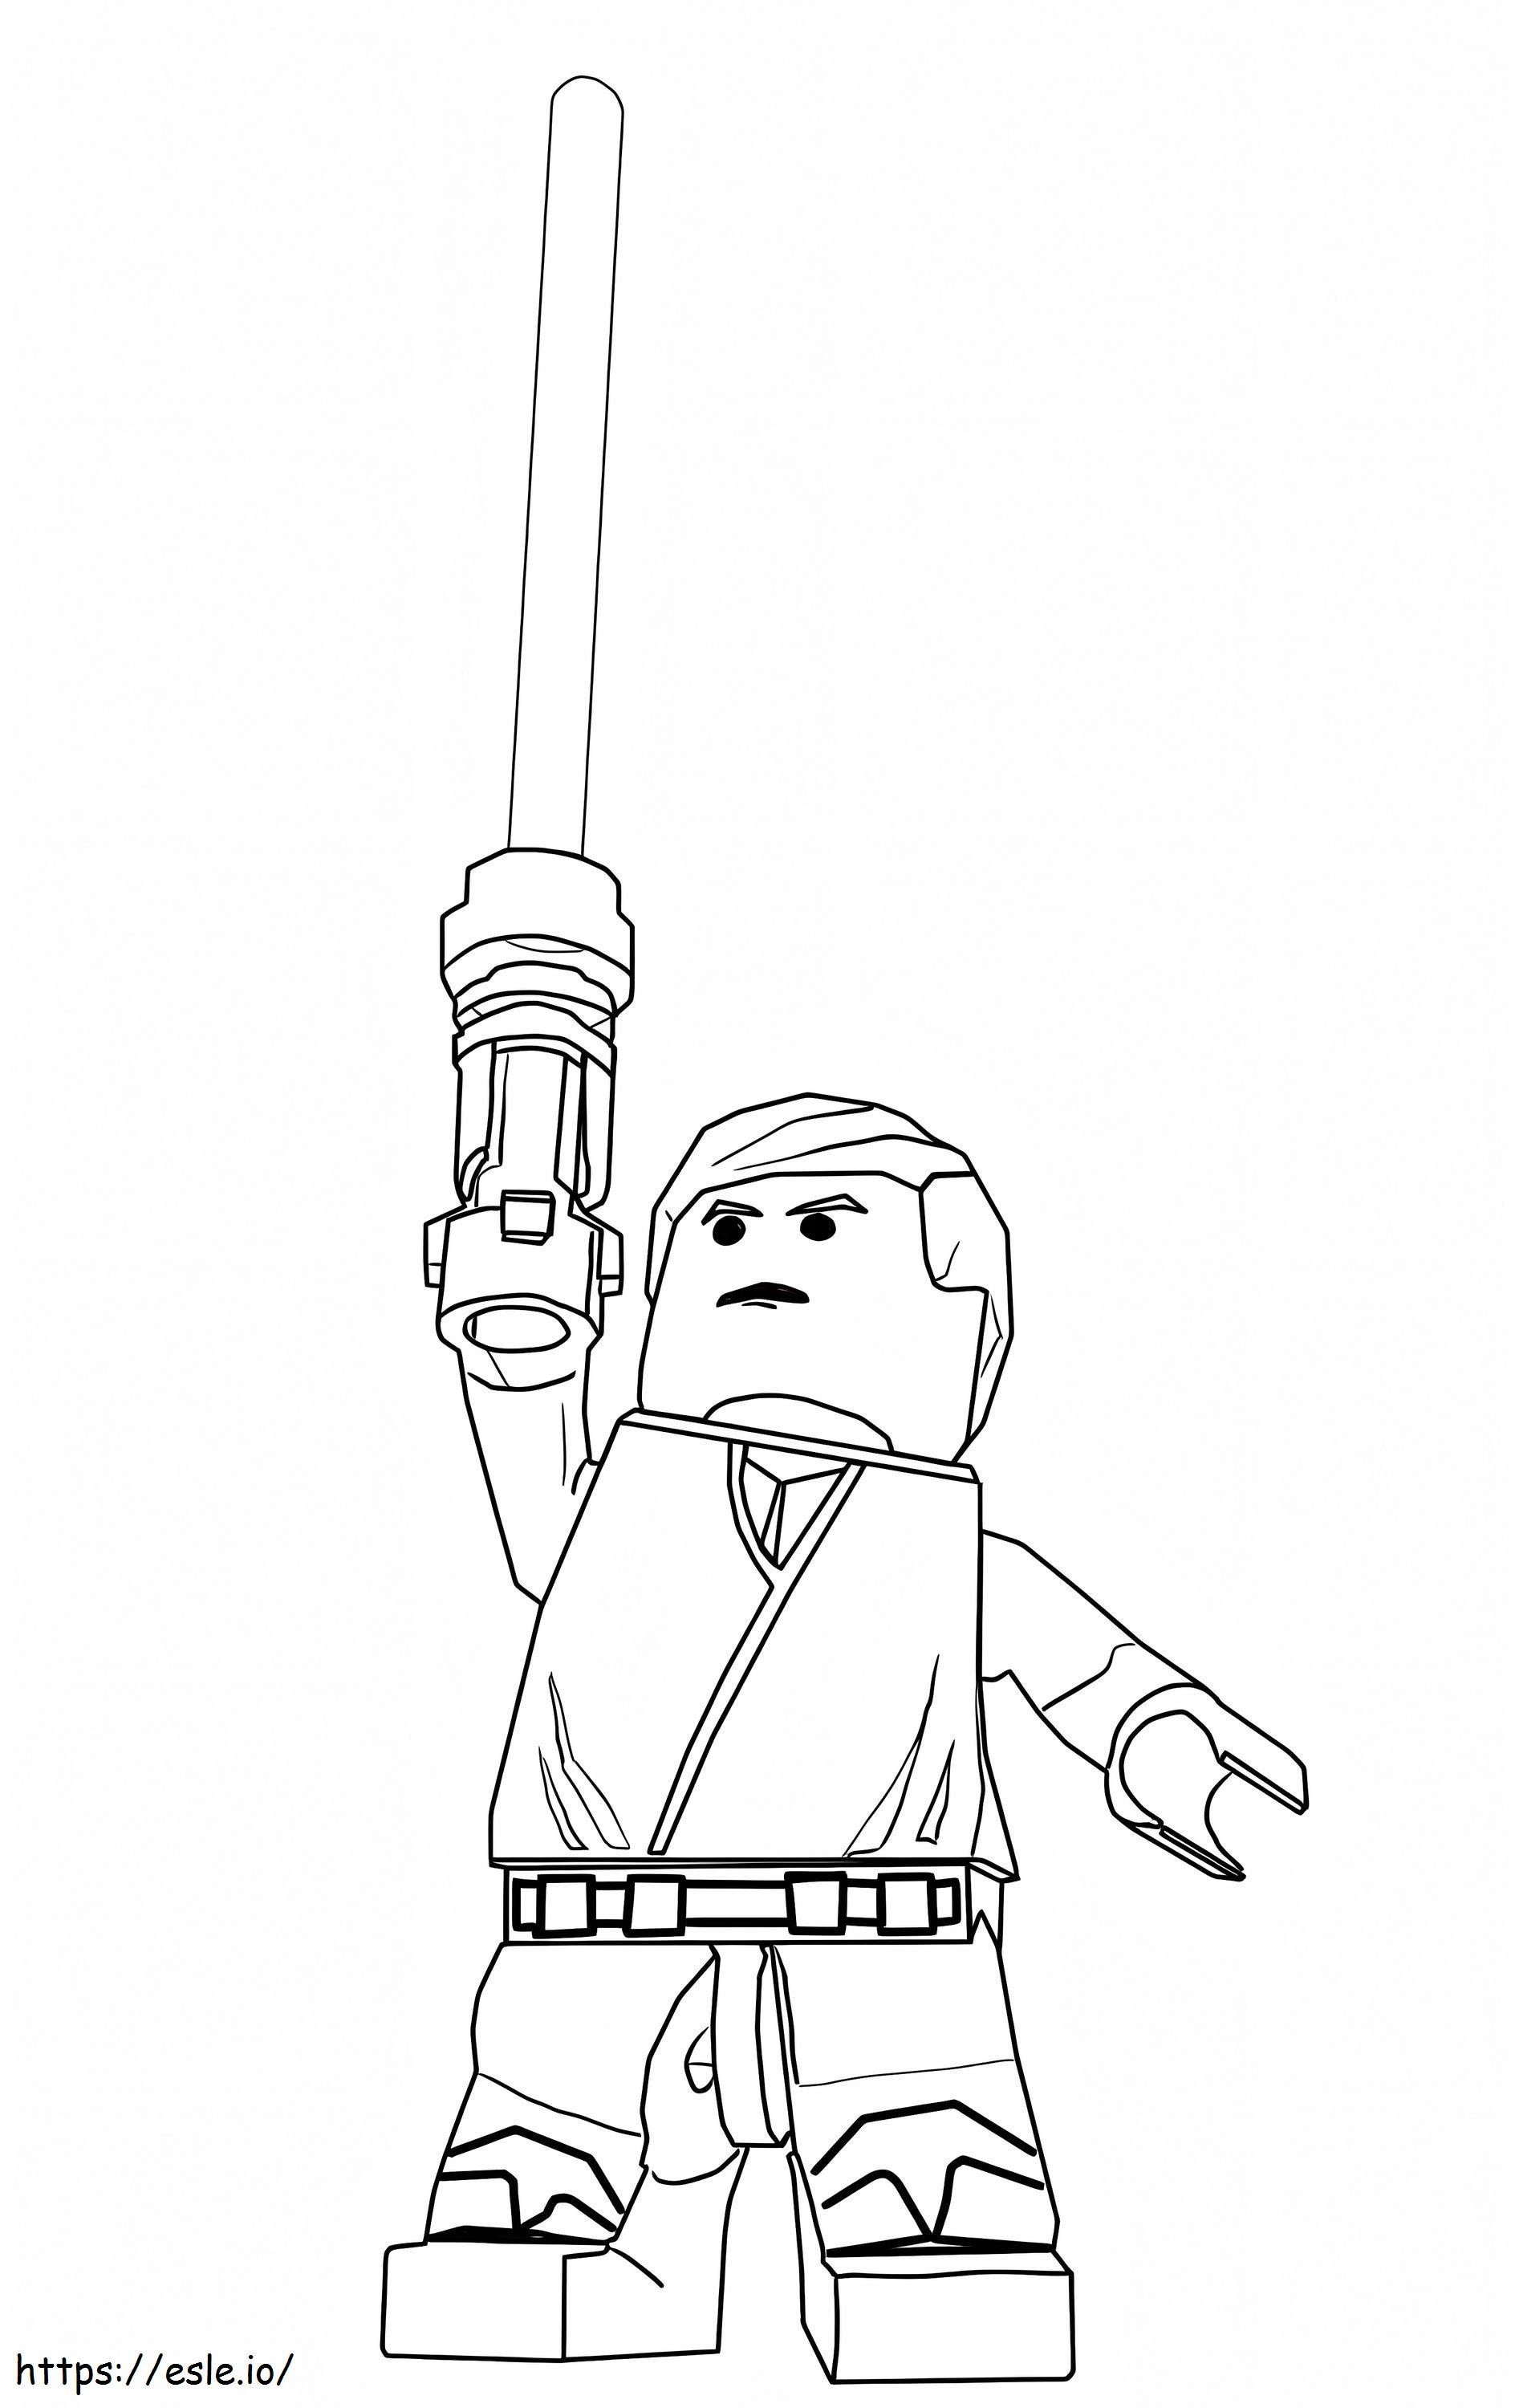 Lego Star Wars Luke Skywalker da colorare